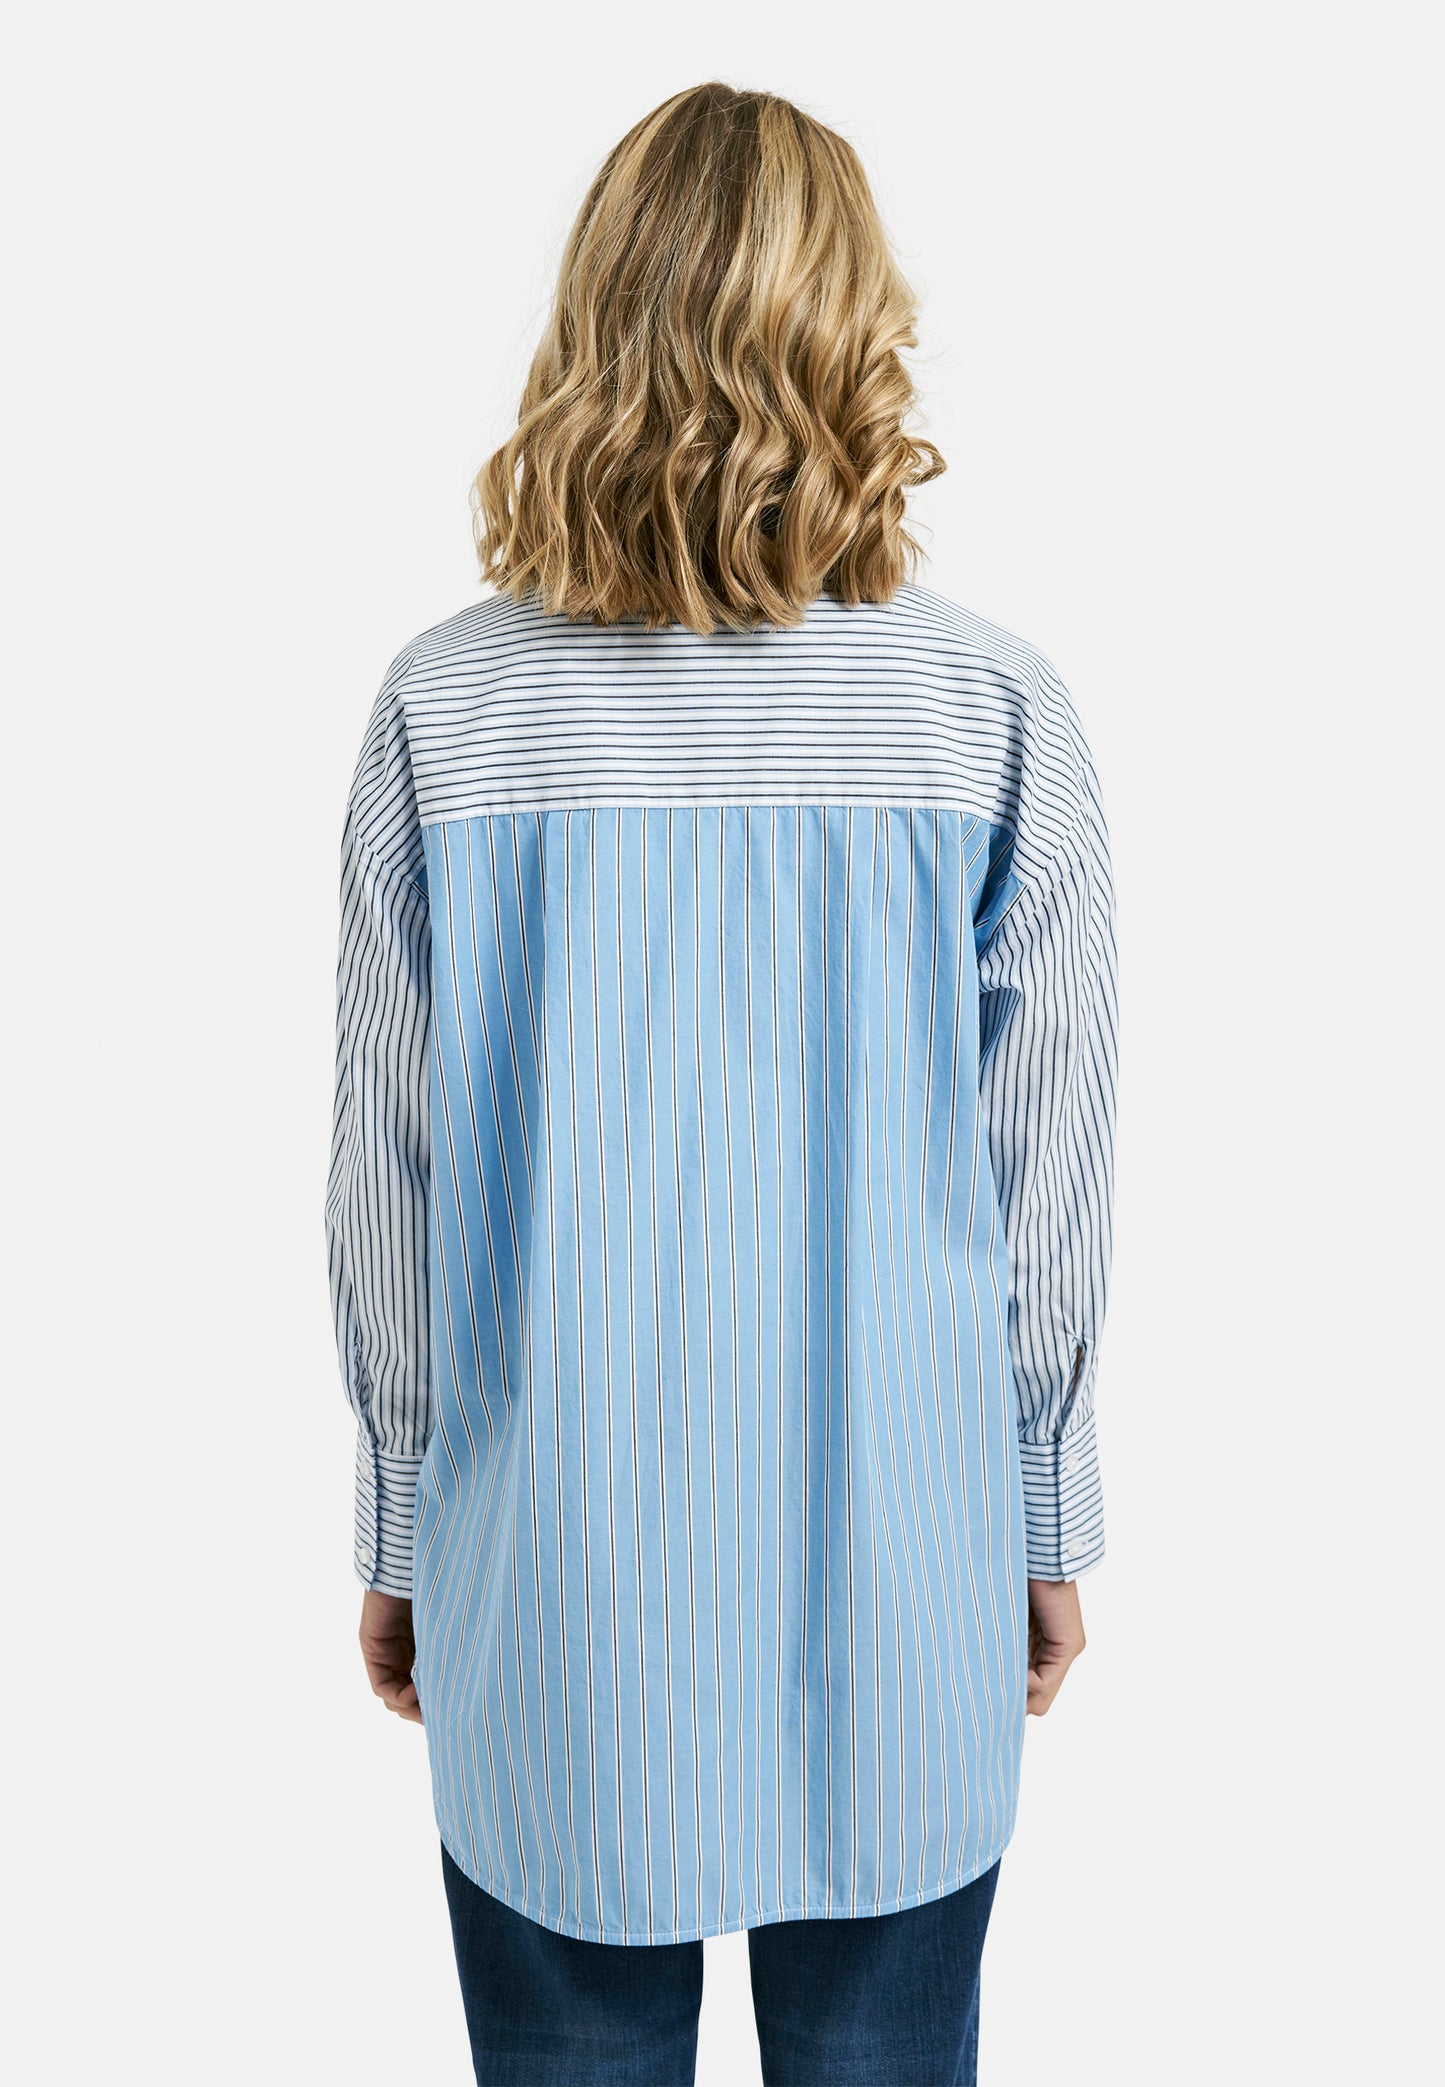 Smith & Soul Stripe Cotton Shirt 0124-0105-S